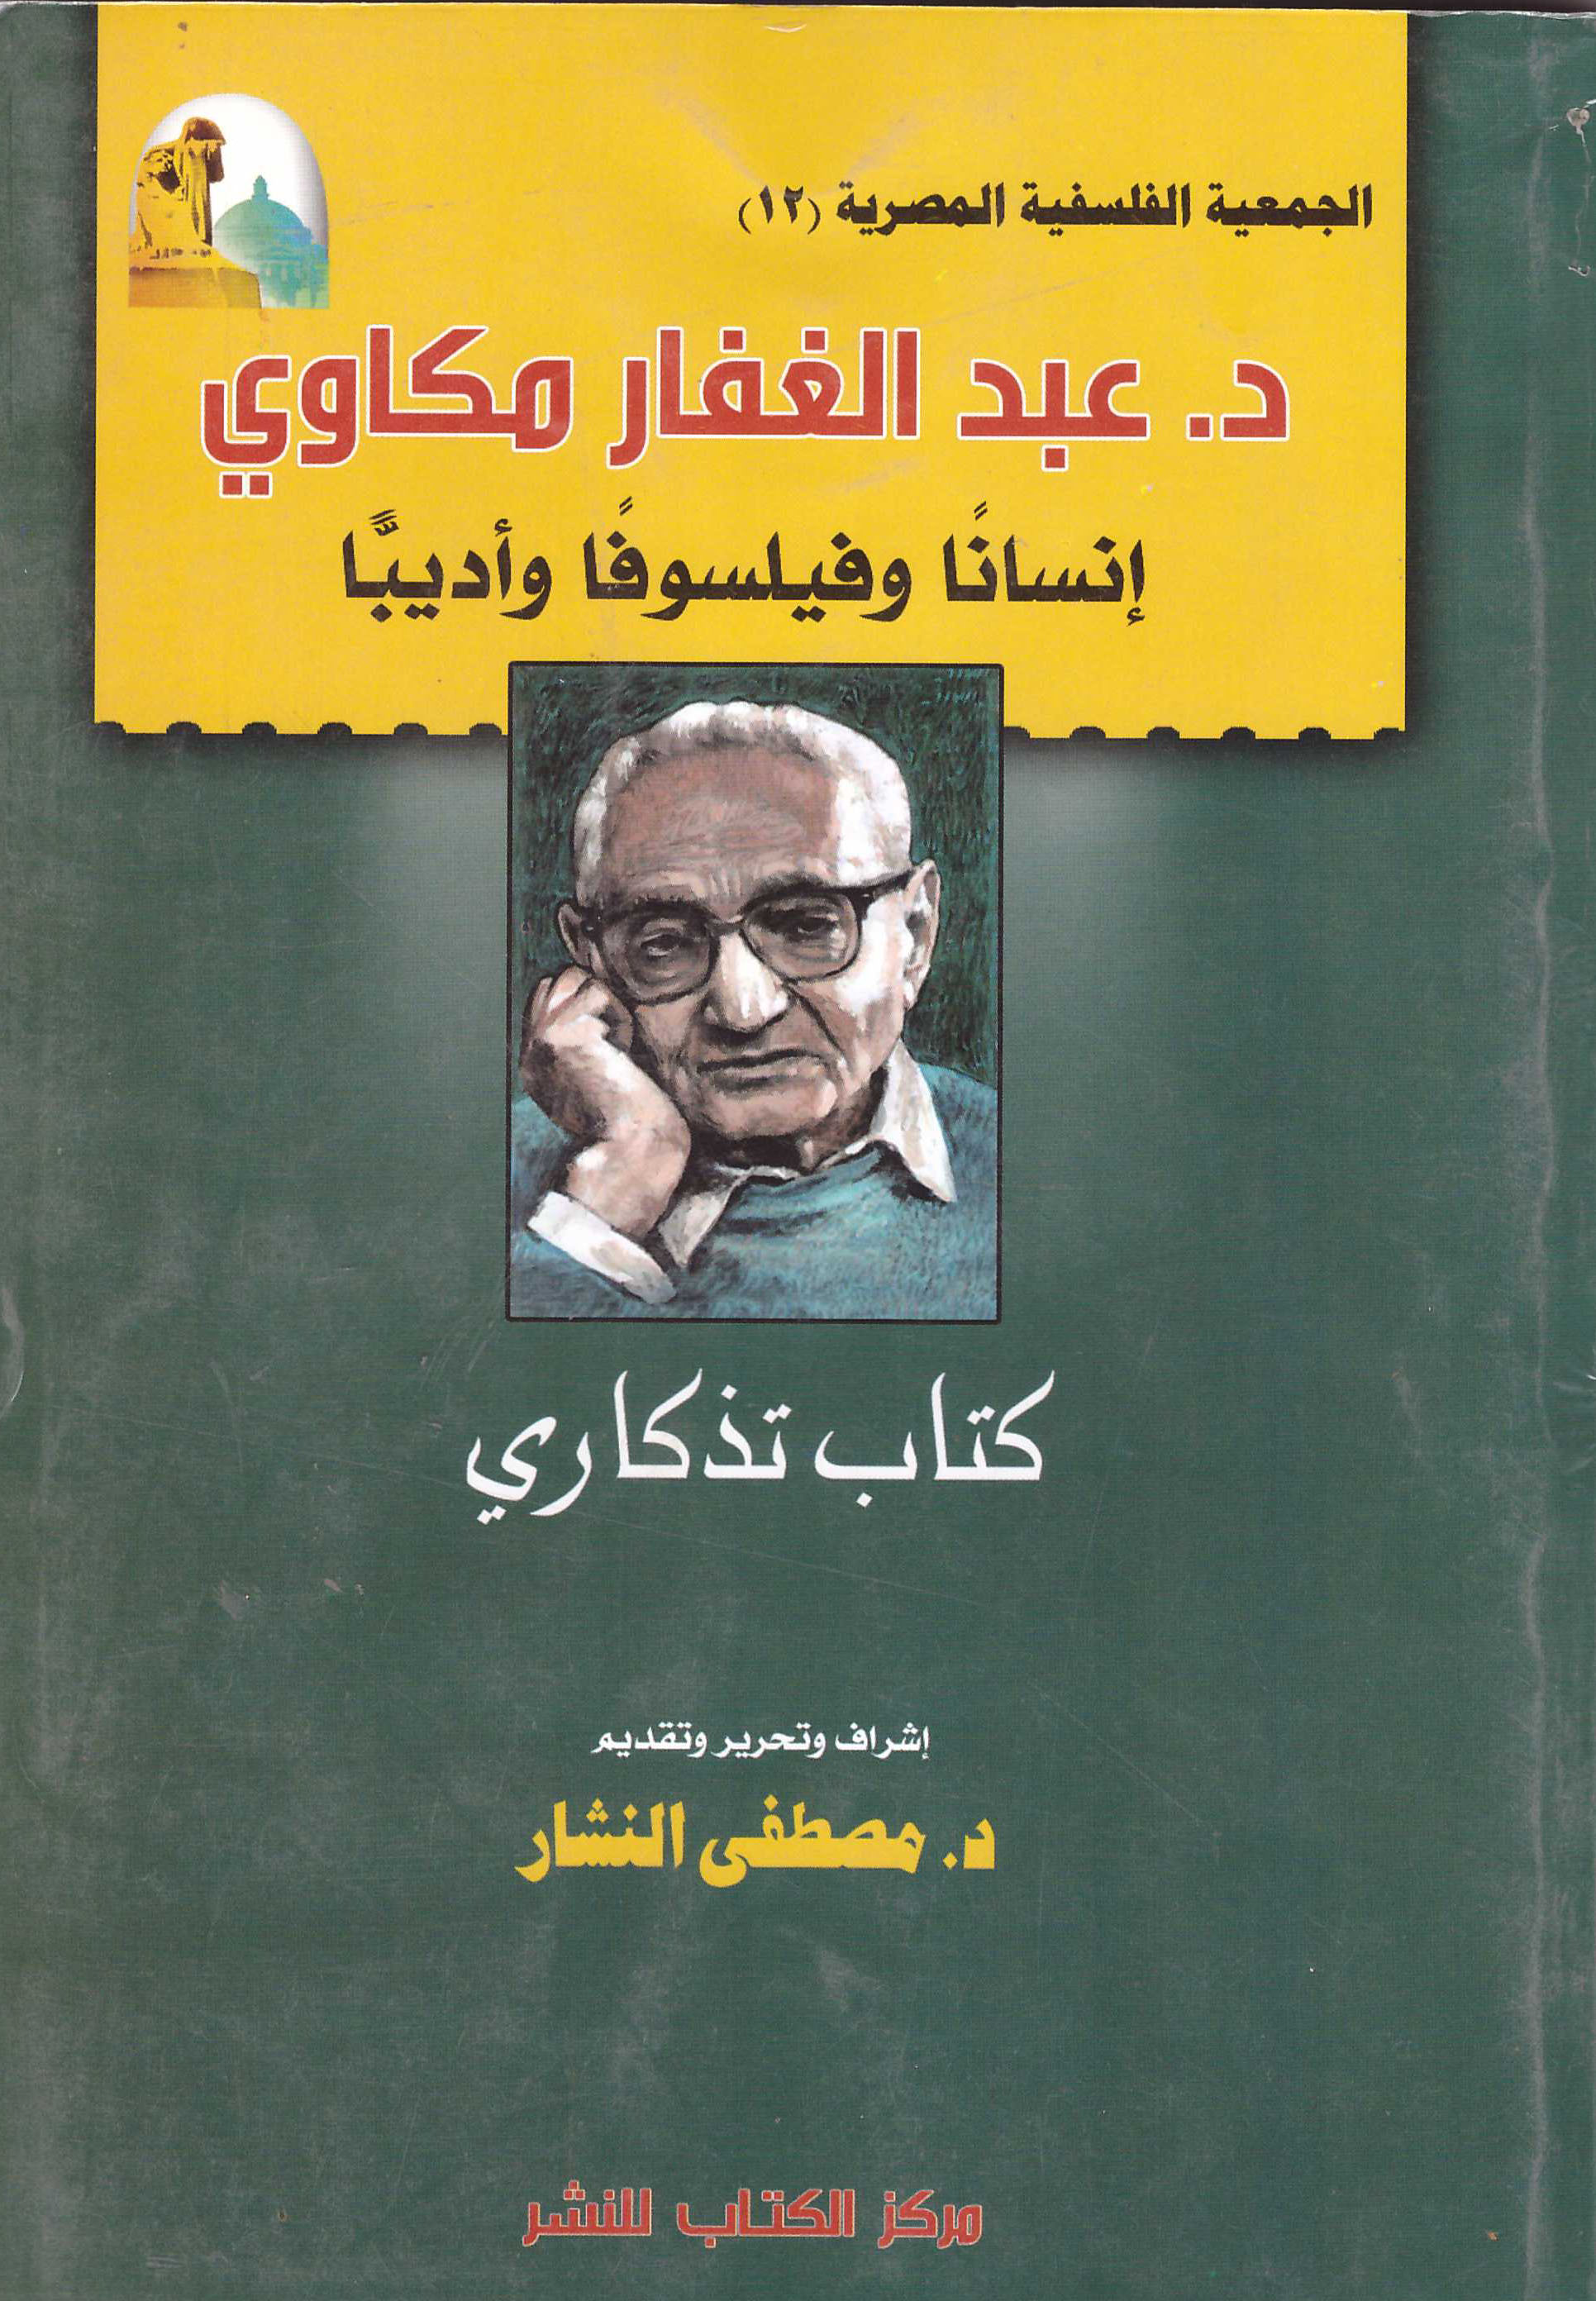 الجمعية الفلسفية المصرية (12) "د. عبد الغفار مكاوي -إنسانا وفيلسوفا وأديبا "